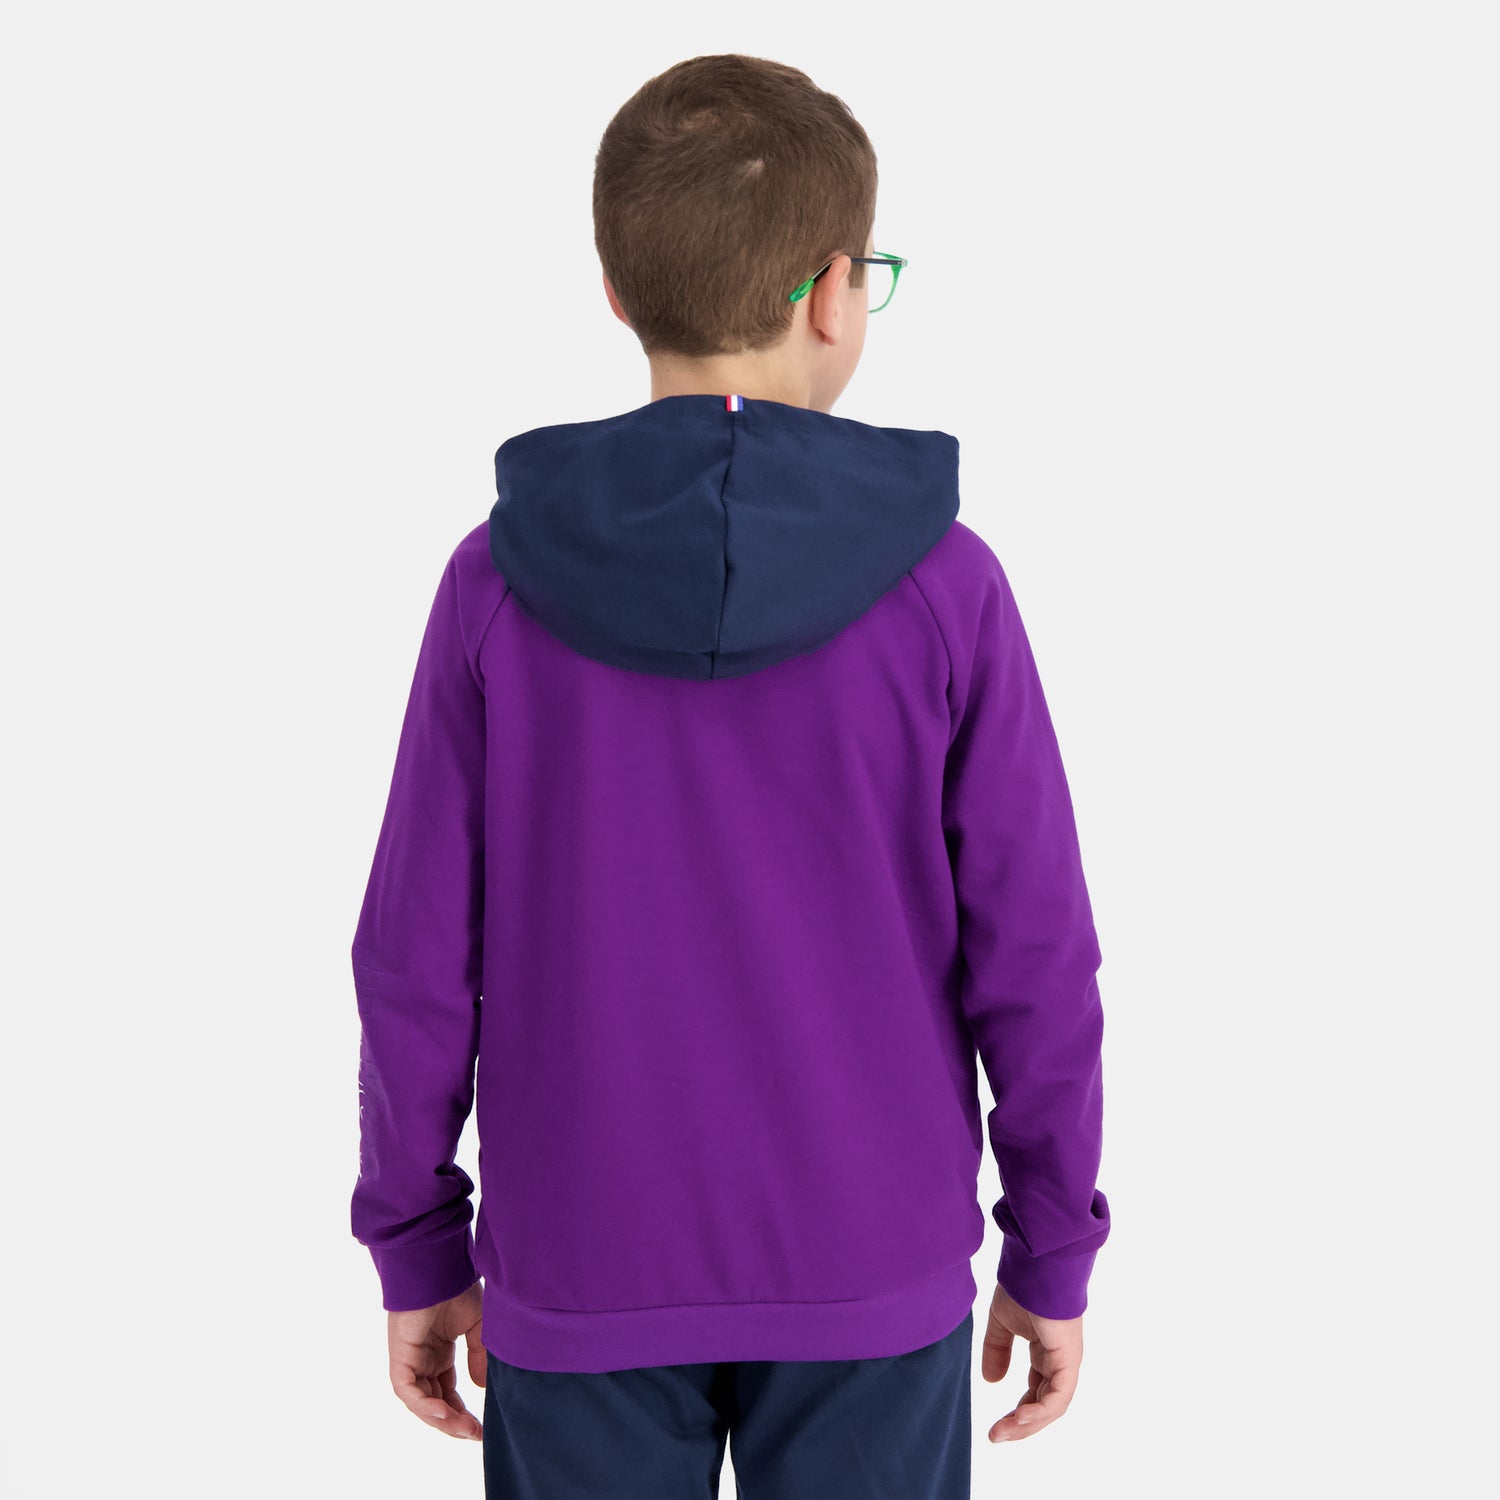 2410685-SAISON 2 Hoody N°1 Enfant violet j/dress | Sweat à capuche Enfant